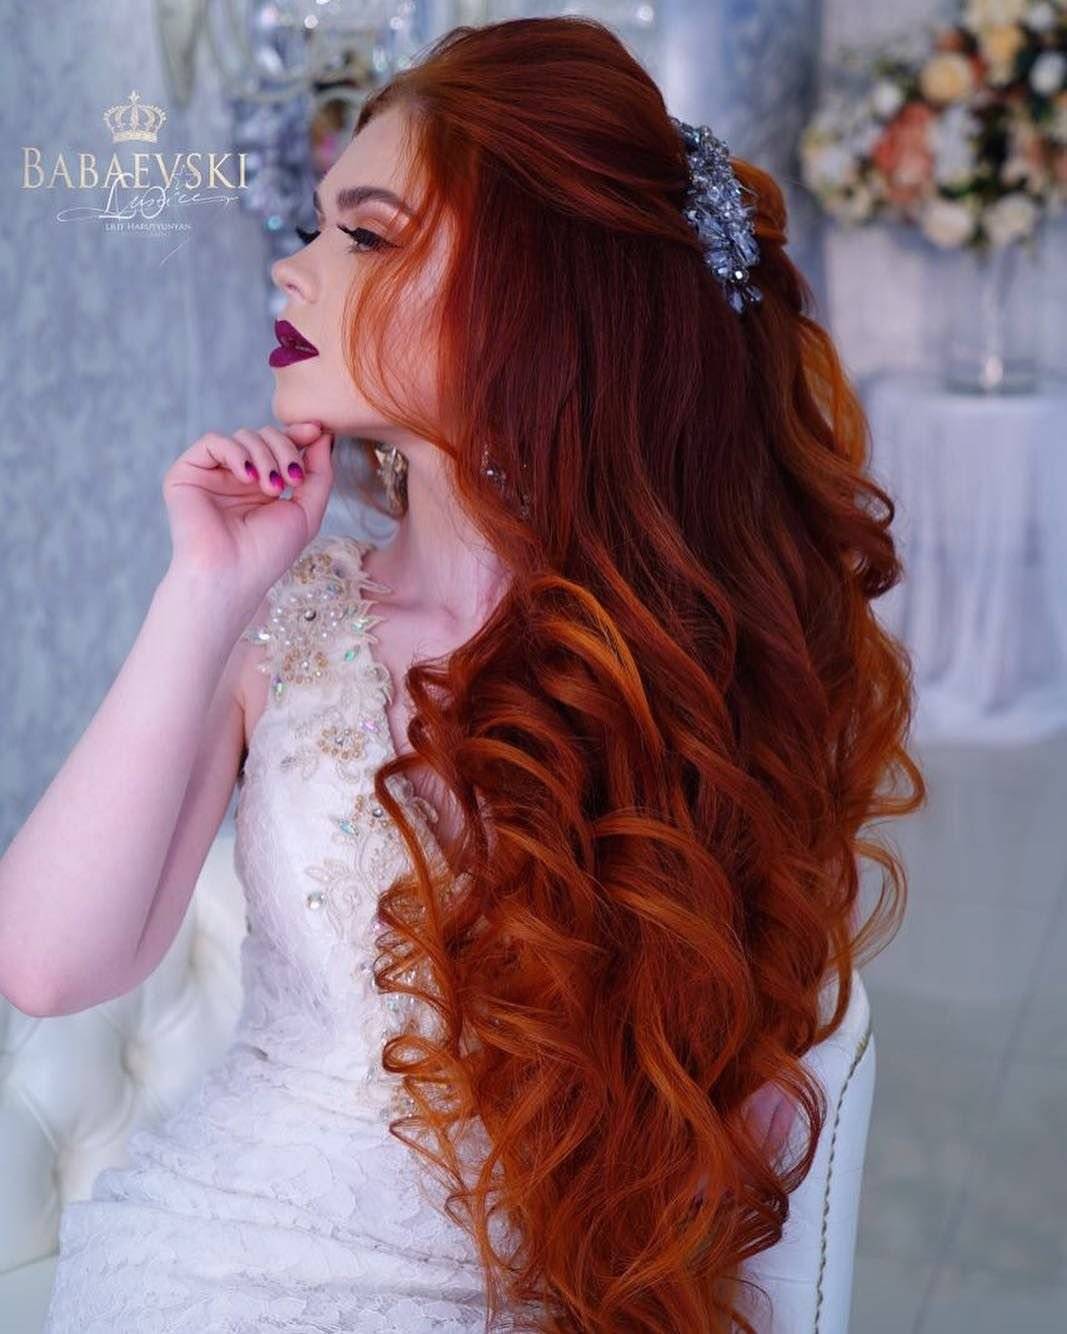 Как невесте покрасить волосы на свадьбу: идеи для блондинок, брюнеток, рыжих